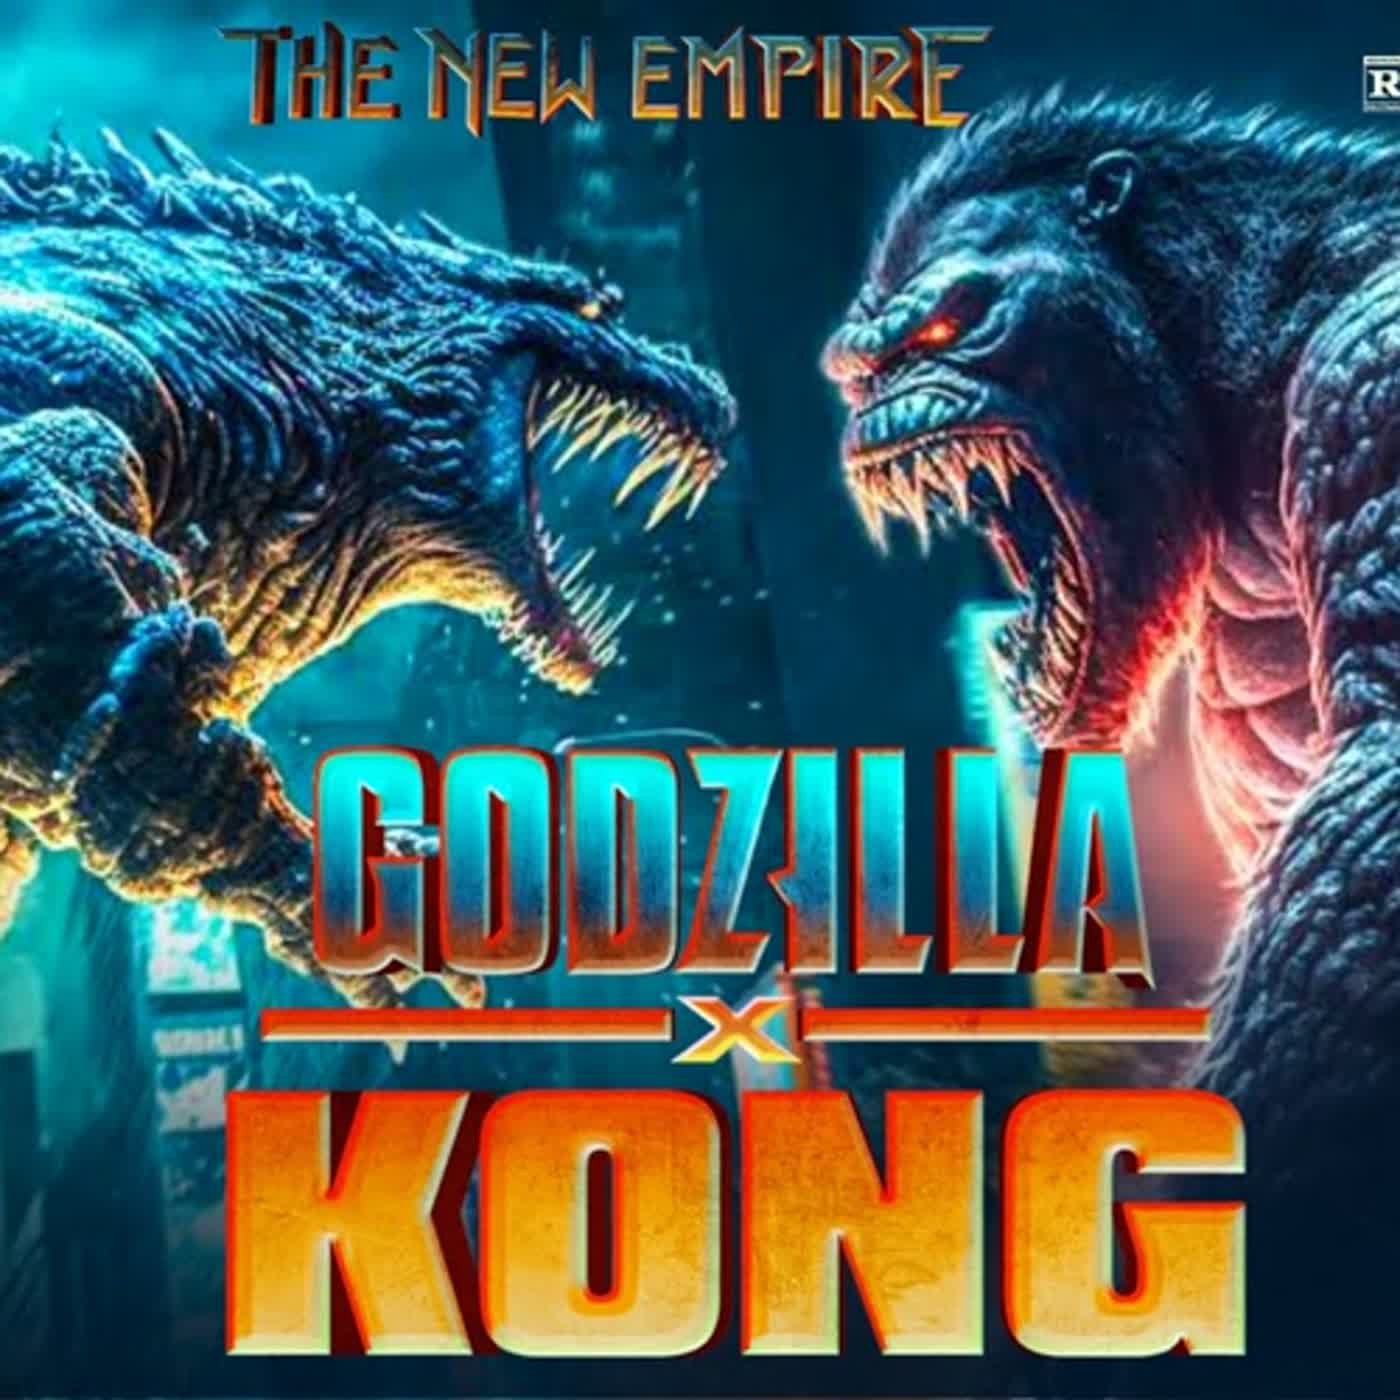 고질라 X 콩: 뉴 엠파이어 Godzilla x Kong-The New Empire영화 다시;보기 2024-fullHD4K 풀버전 무료 【고화질로】 KOREA